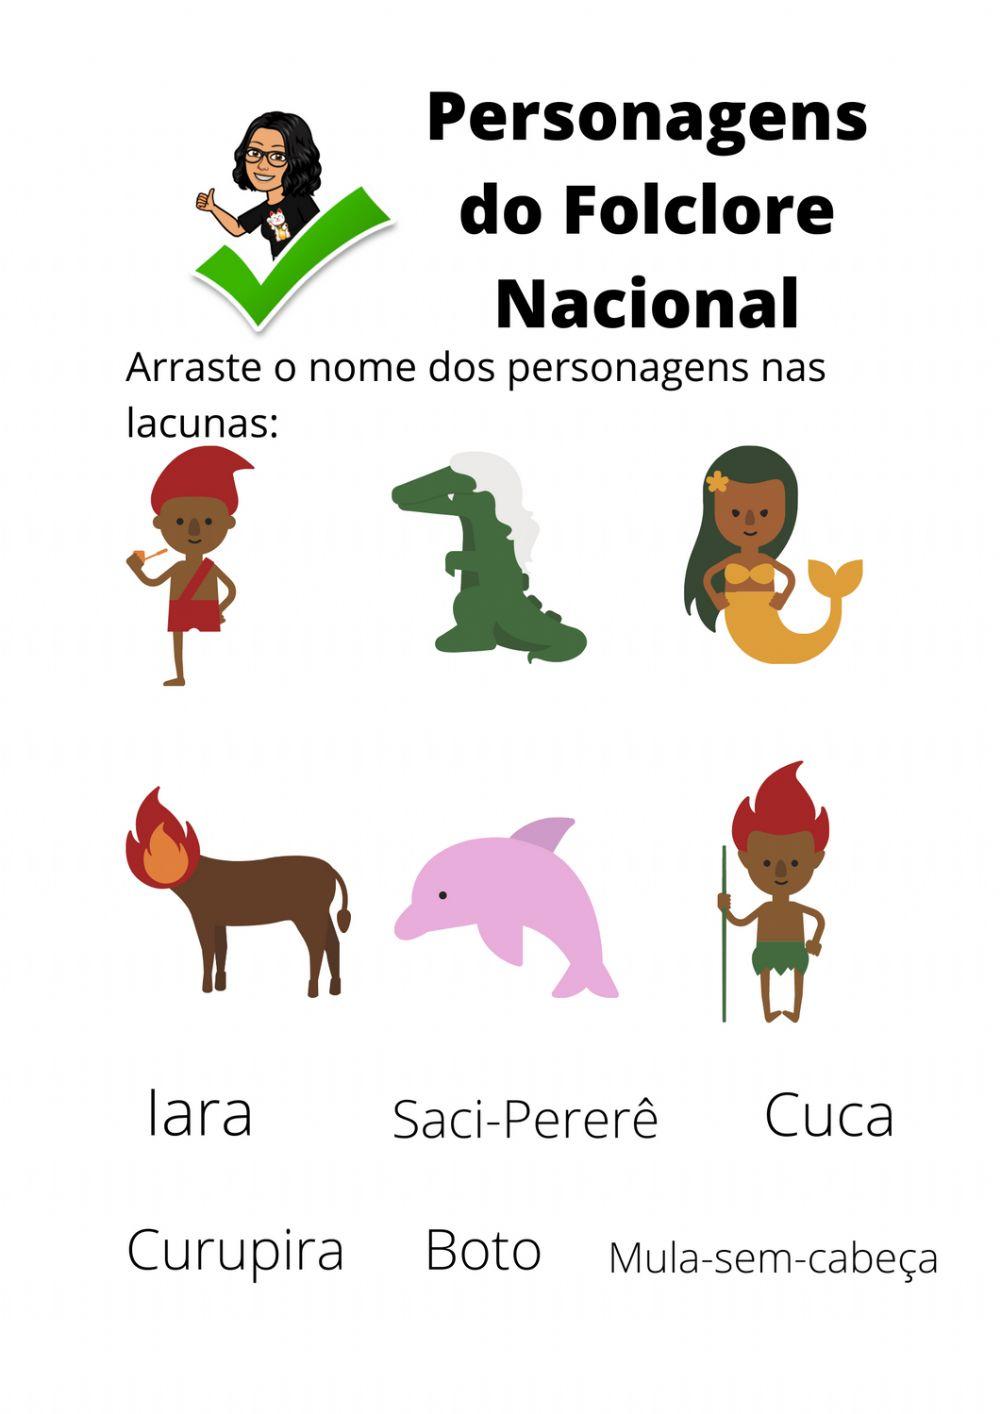 Personagens do folclore nacional